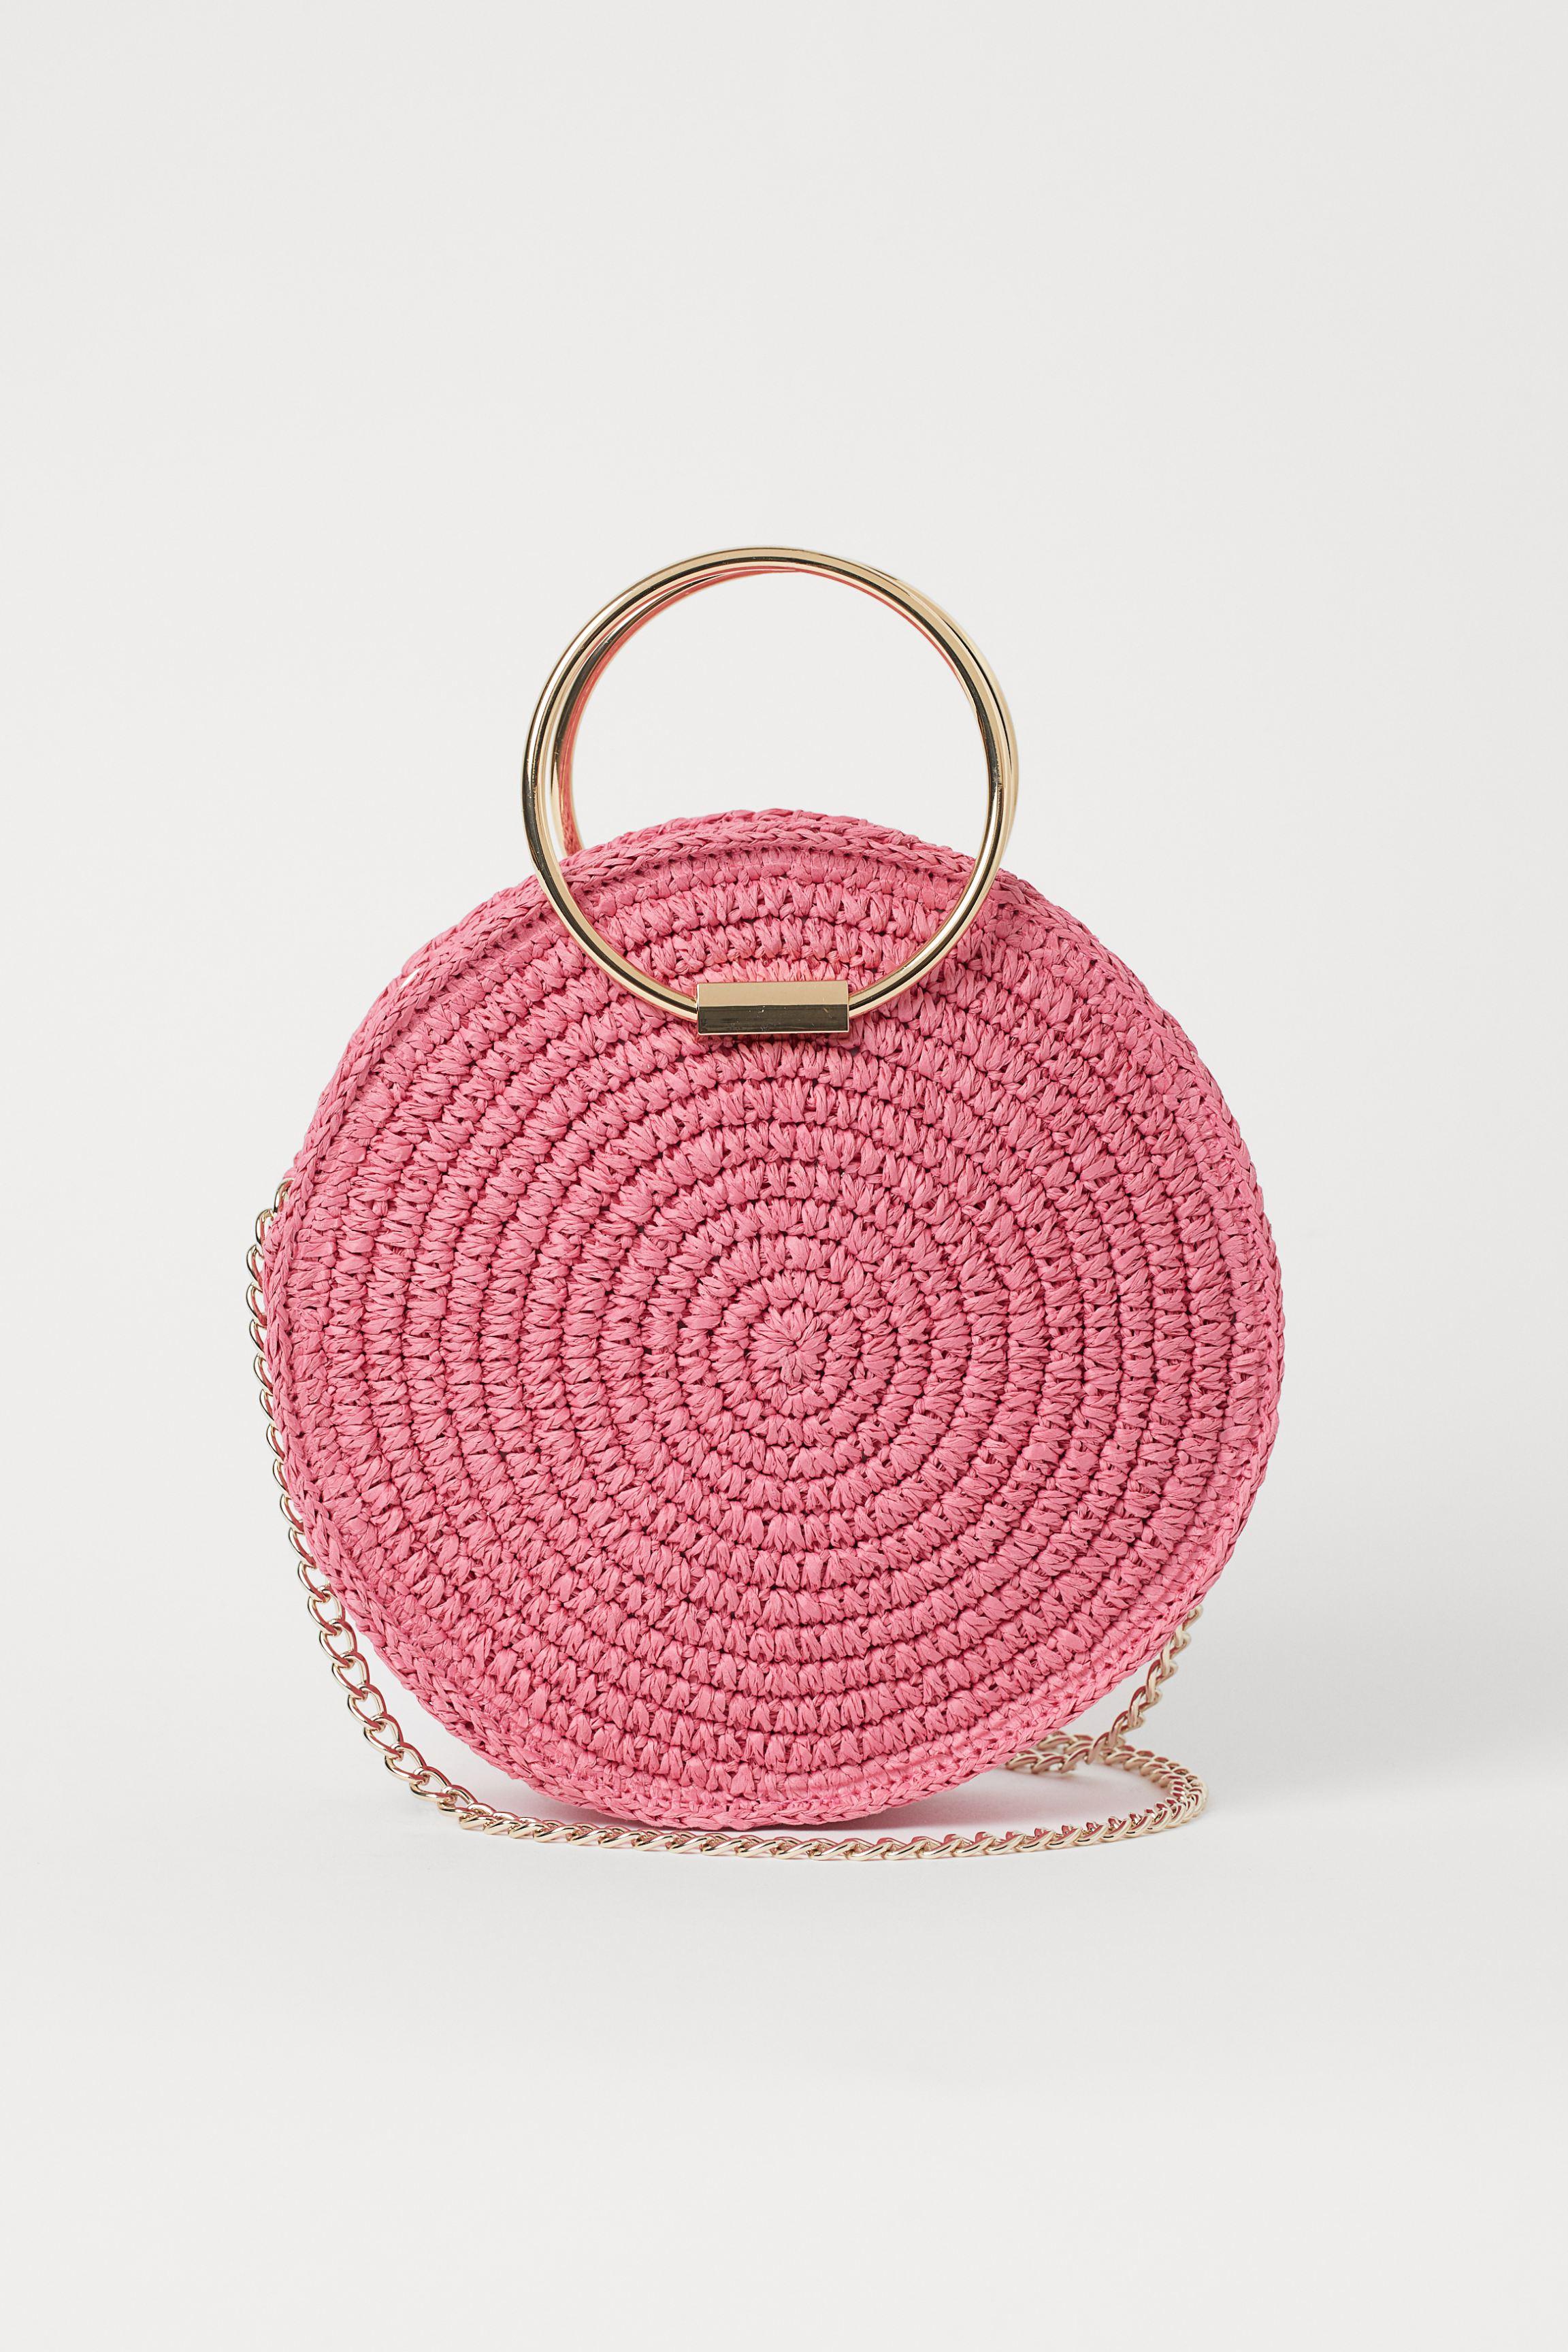 H&M Round Straw Shoulder Bag in Pink - Lyst